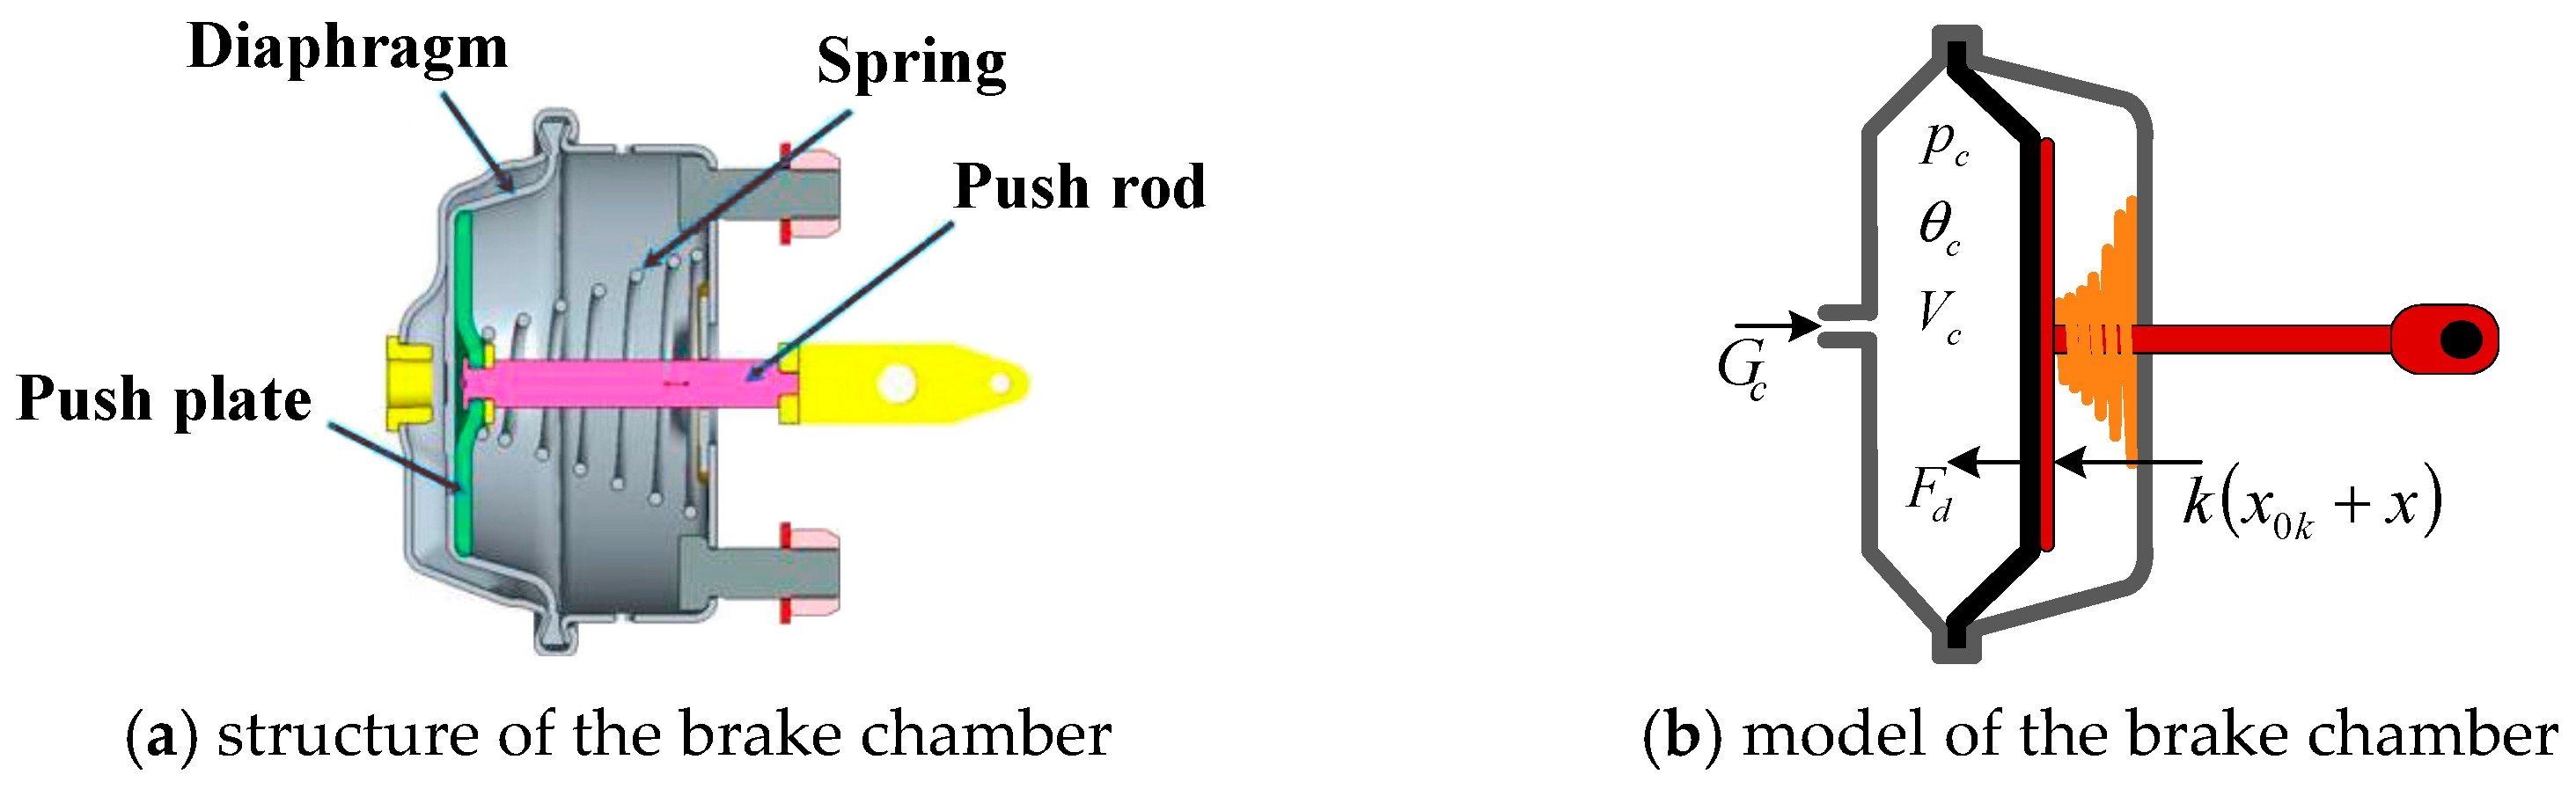 Brake Chamber Diagram | My Wiring DIagram